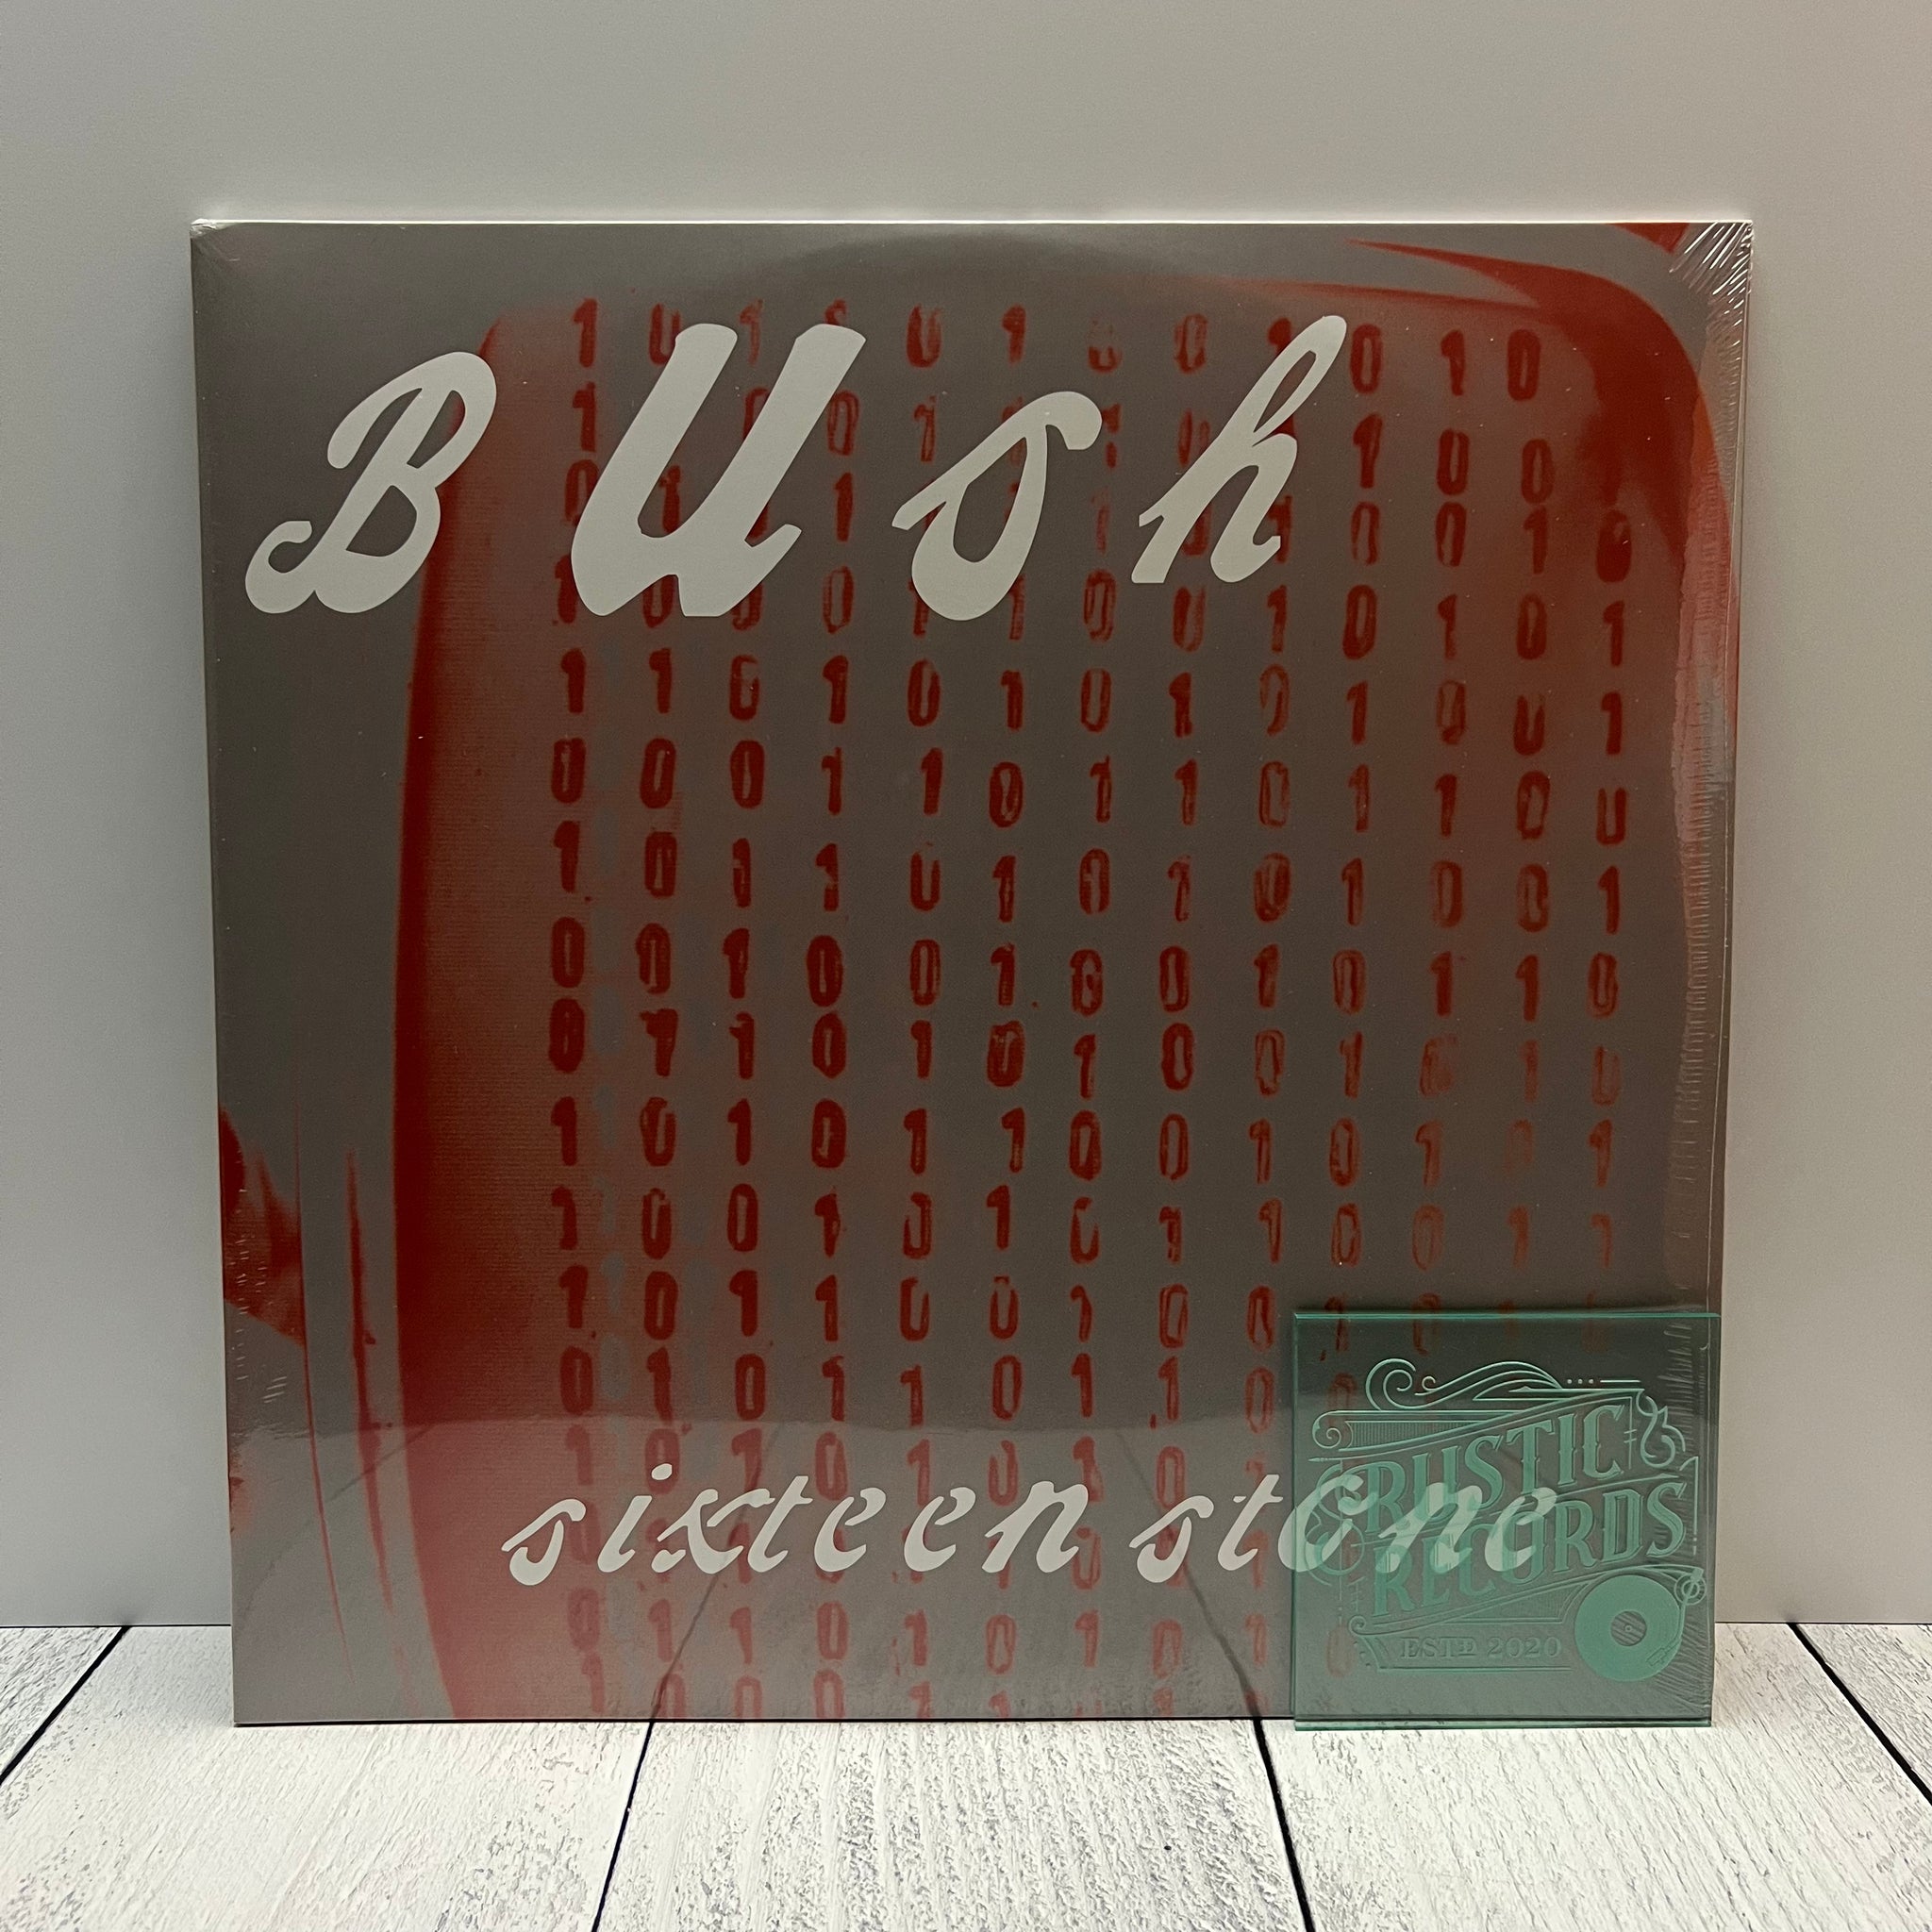 Bush - Sixteen Stone (Black Vinyl)